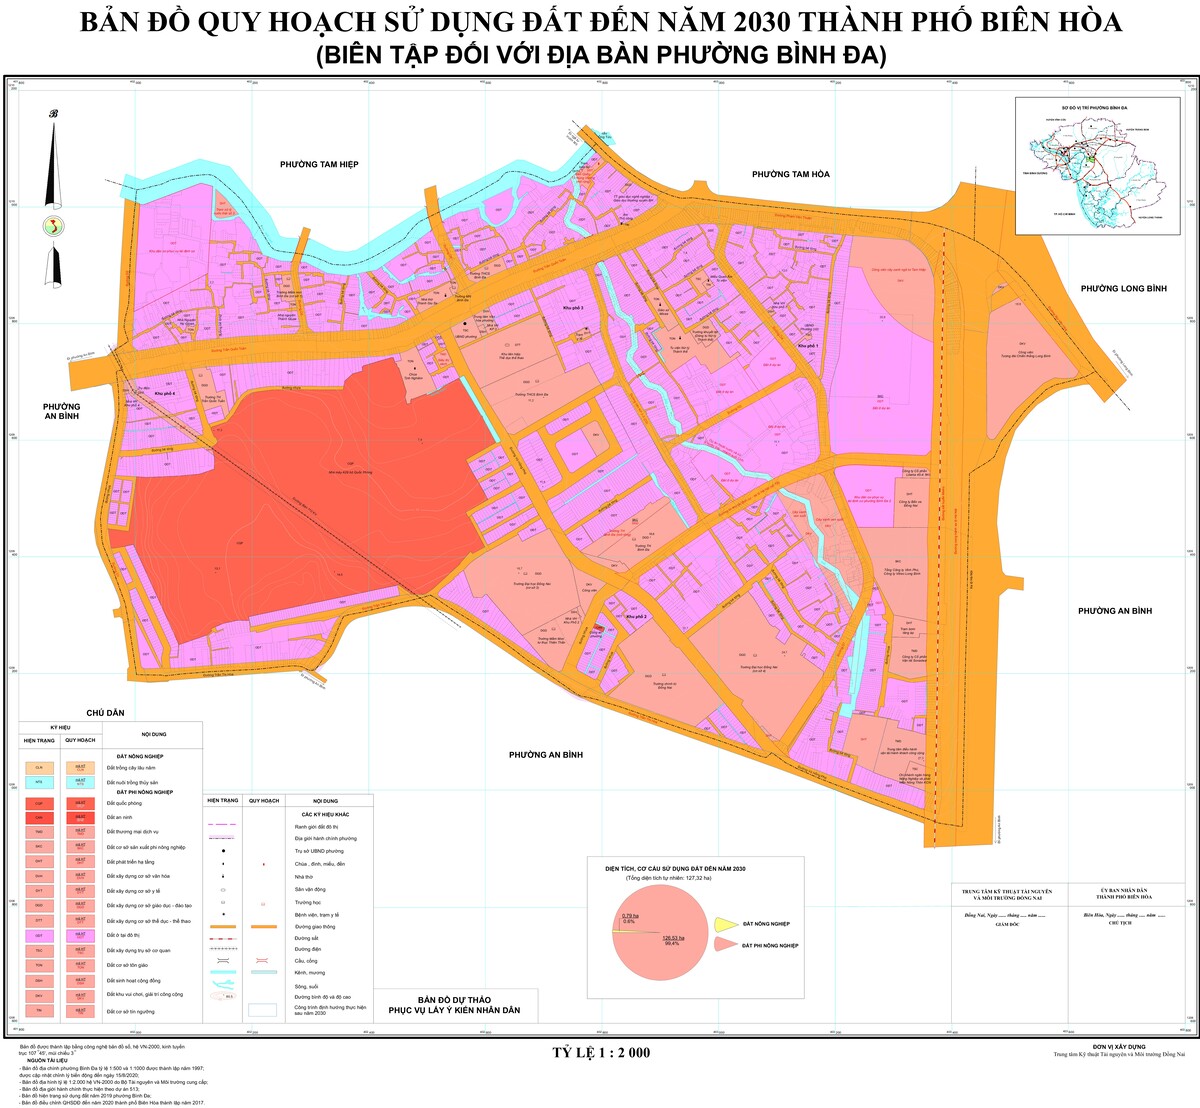 Bản đồ quy hoạch phường Bình Đa, thành phố Biên Hòa, tỉnh Đồng Nai đến năm 2030